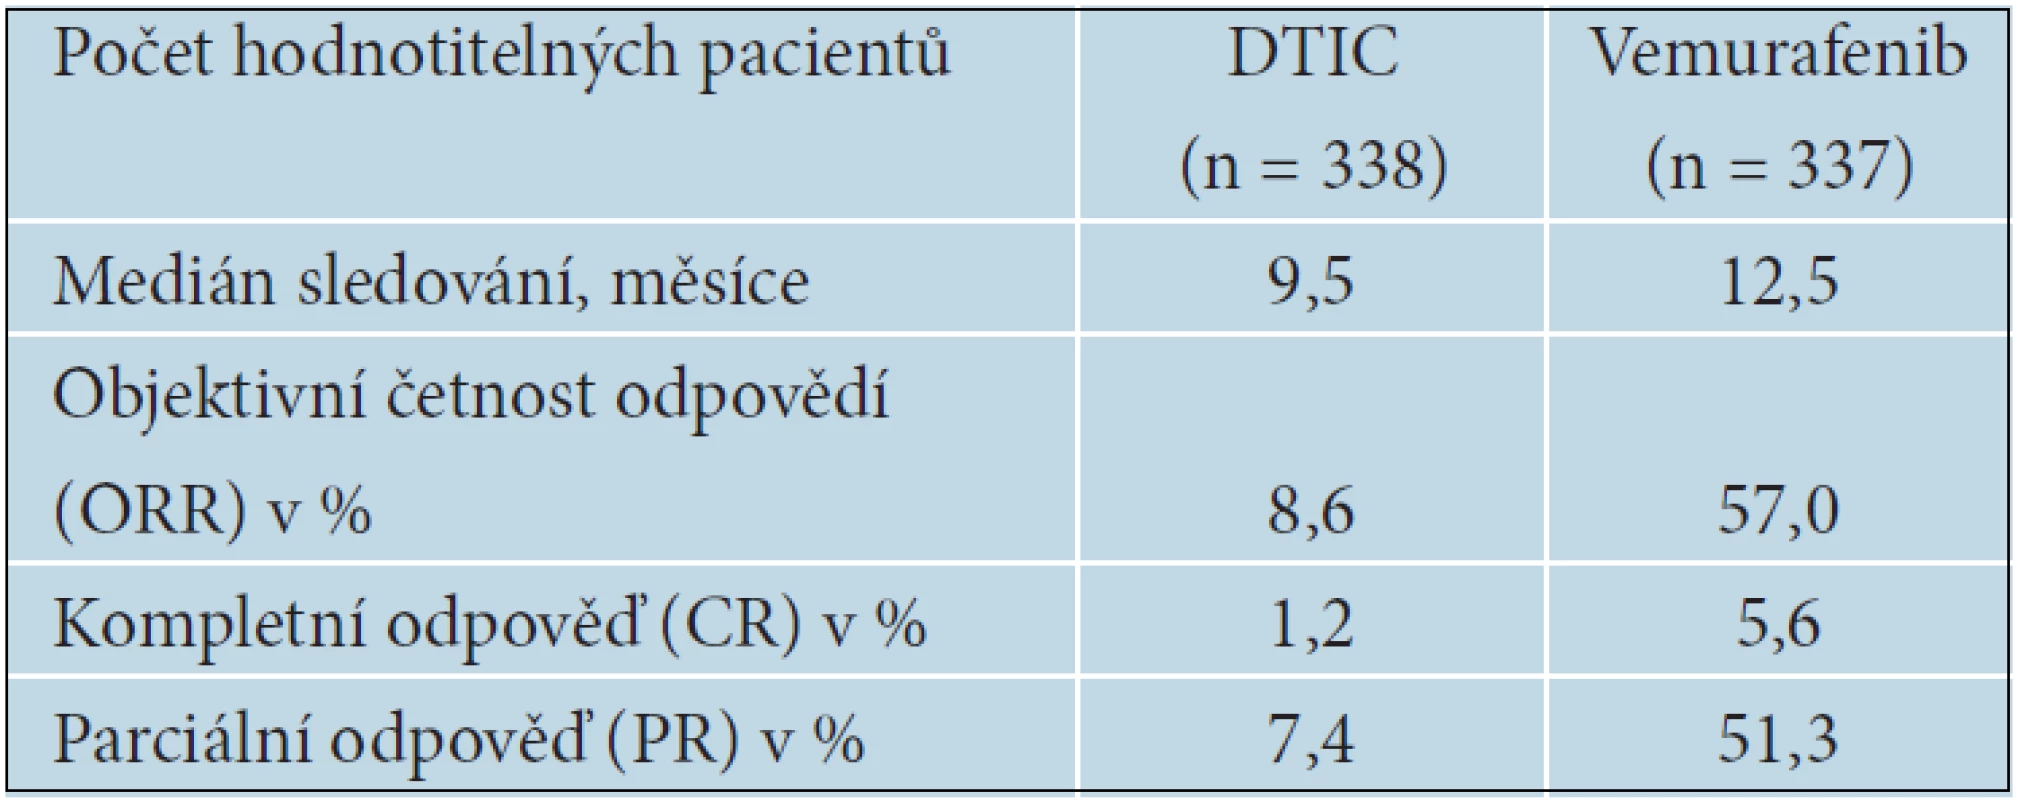 Aktualizované výsledky BRiM 3 studie s vemurafenibem, asCo 2012